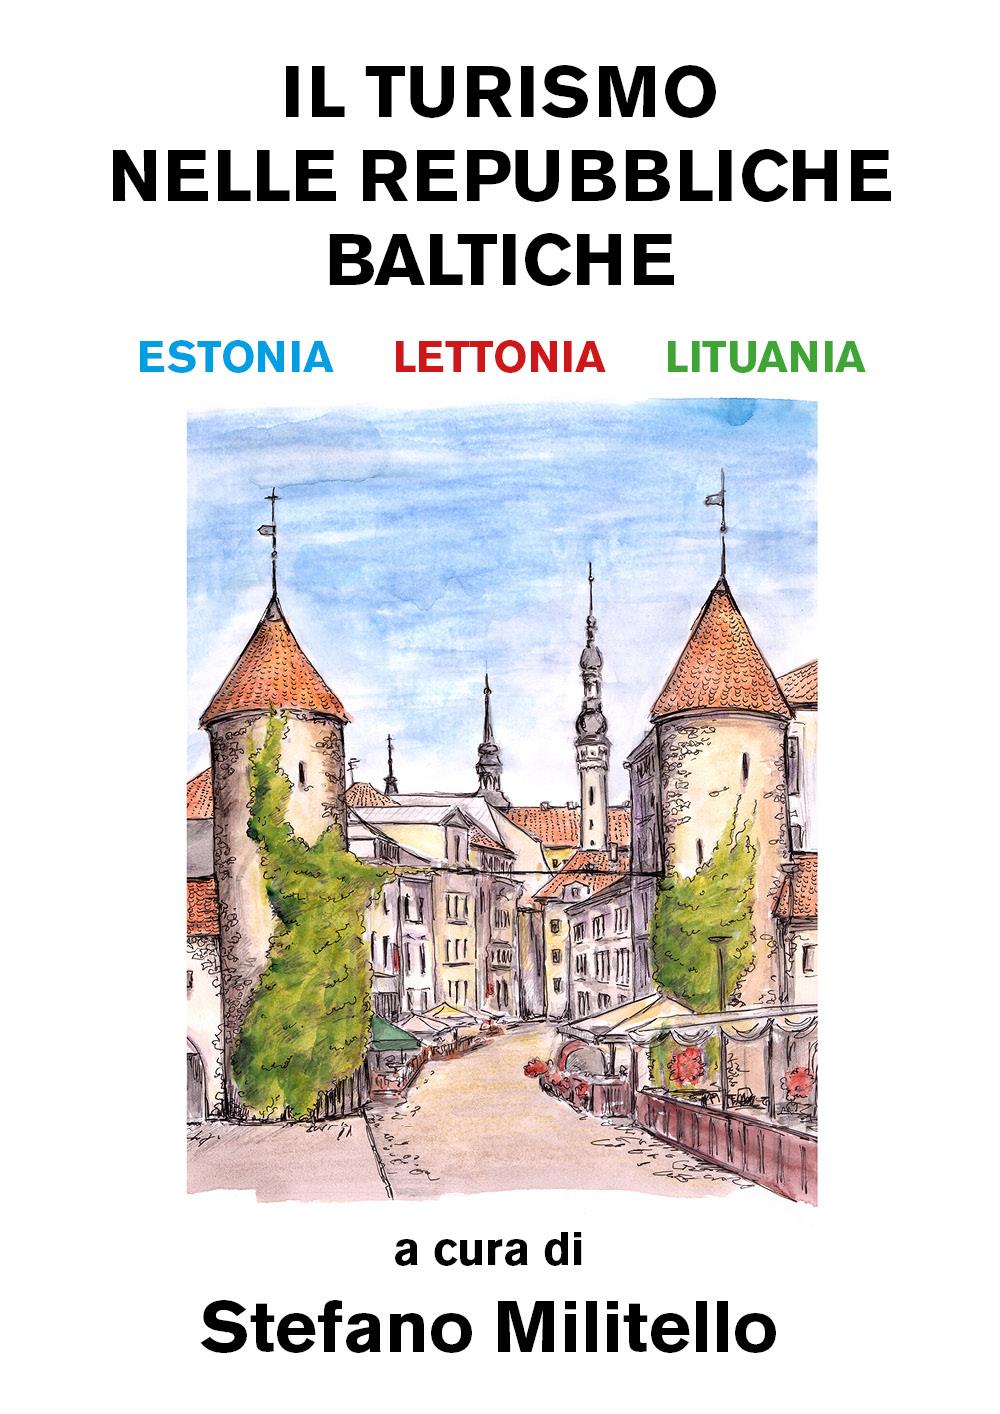 Il turismo nelle Repubbliche Baltiche. Estonia, Lettonia e Lituania.